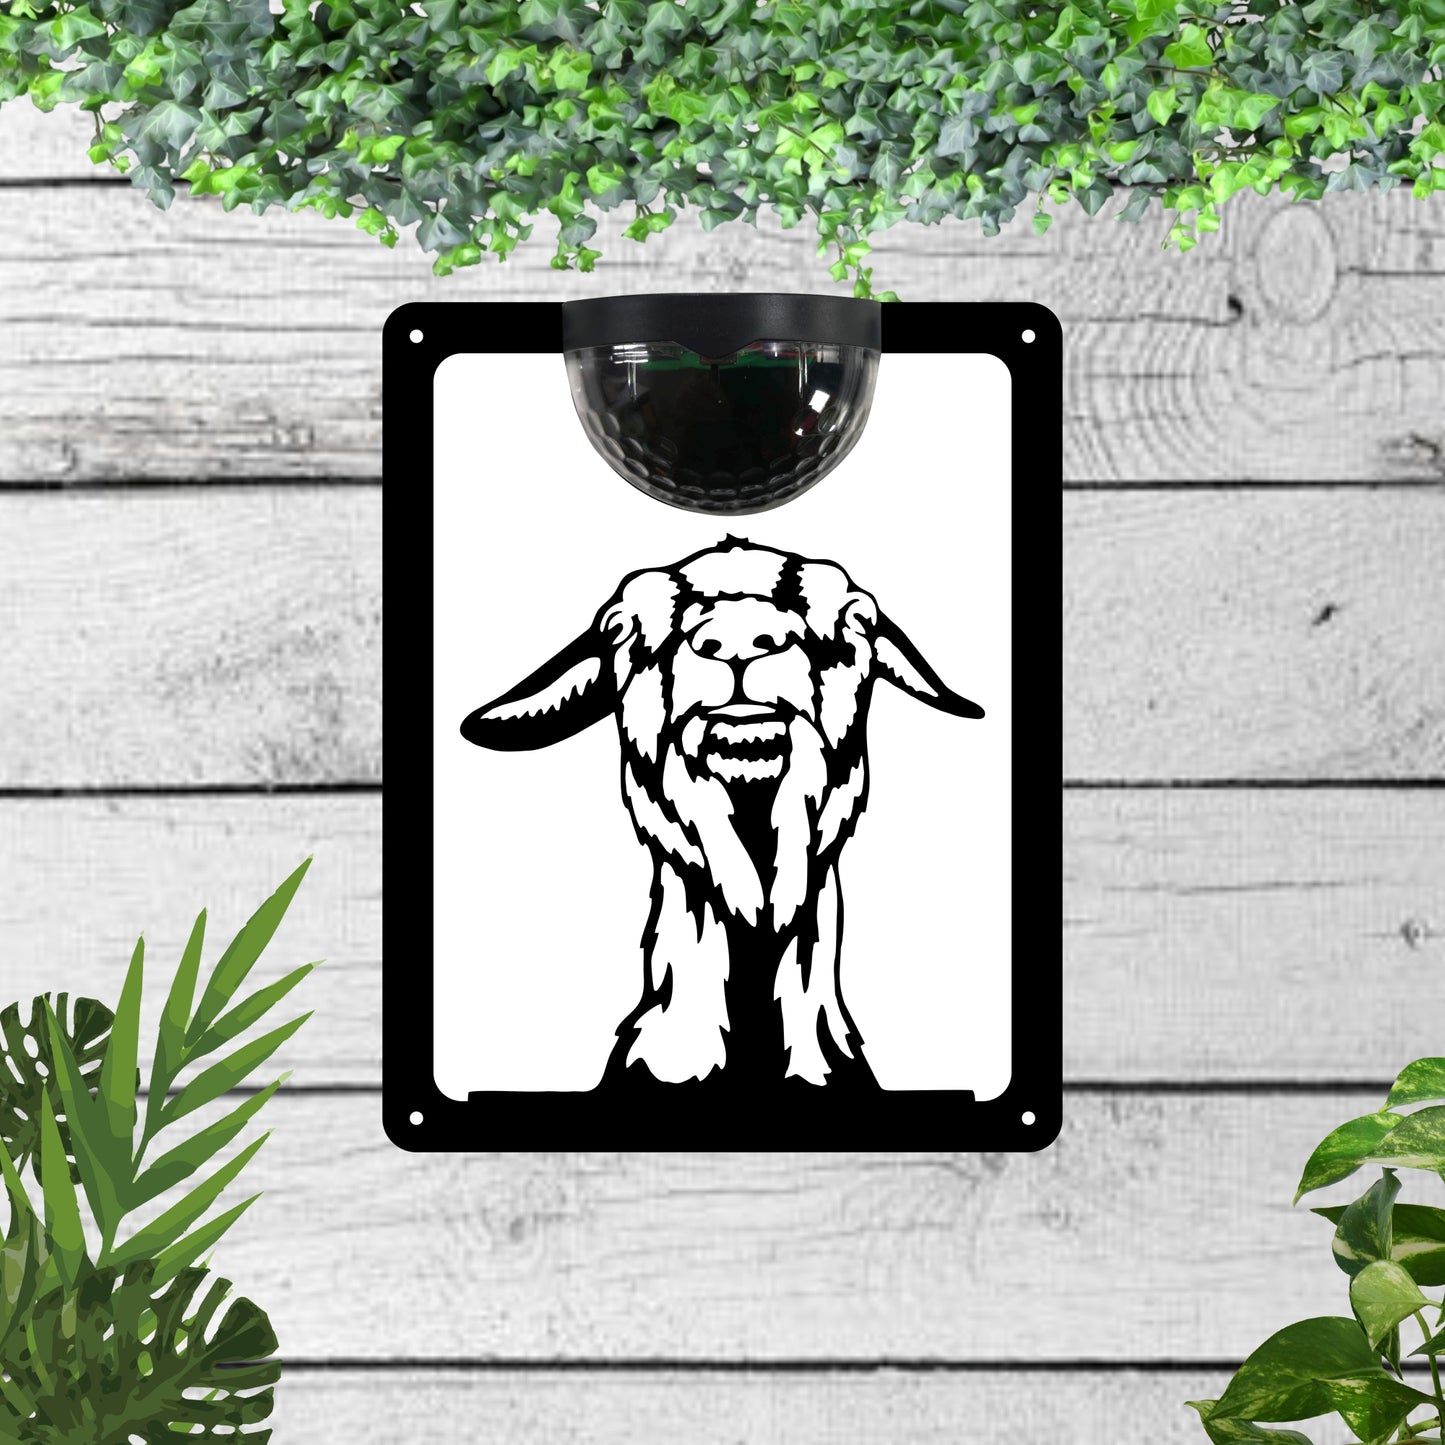 Garden Solar Light Wall Plaque Featuring a Goat | John Alans